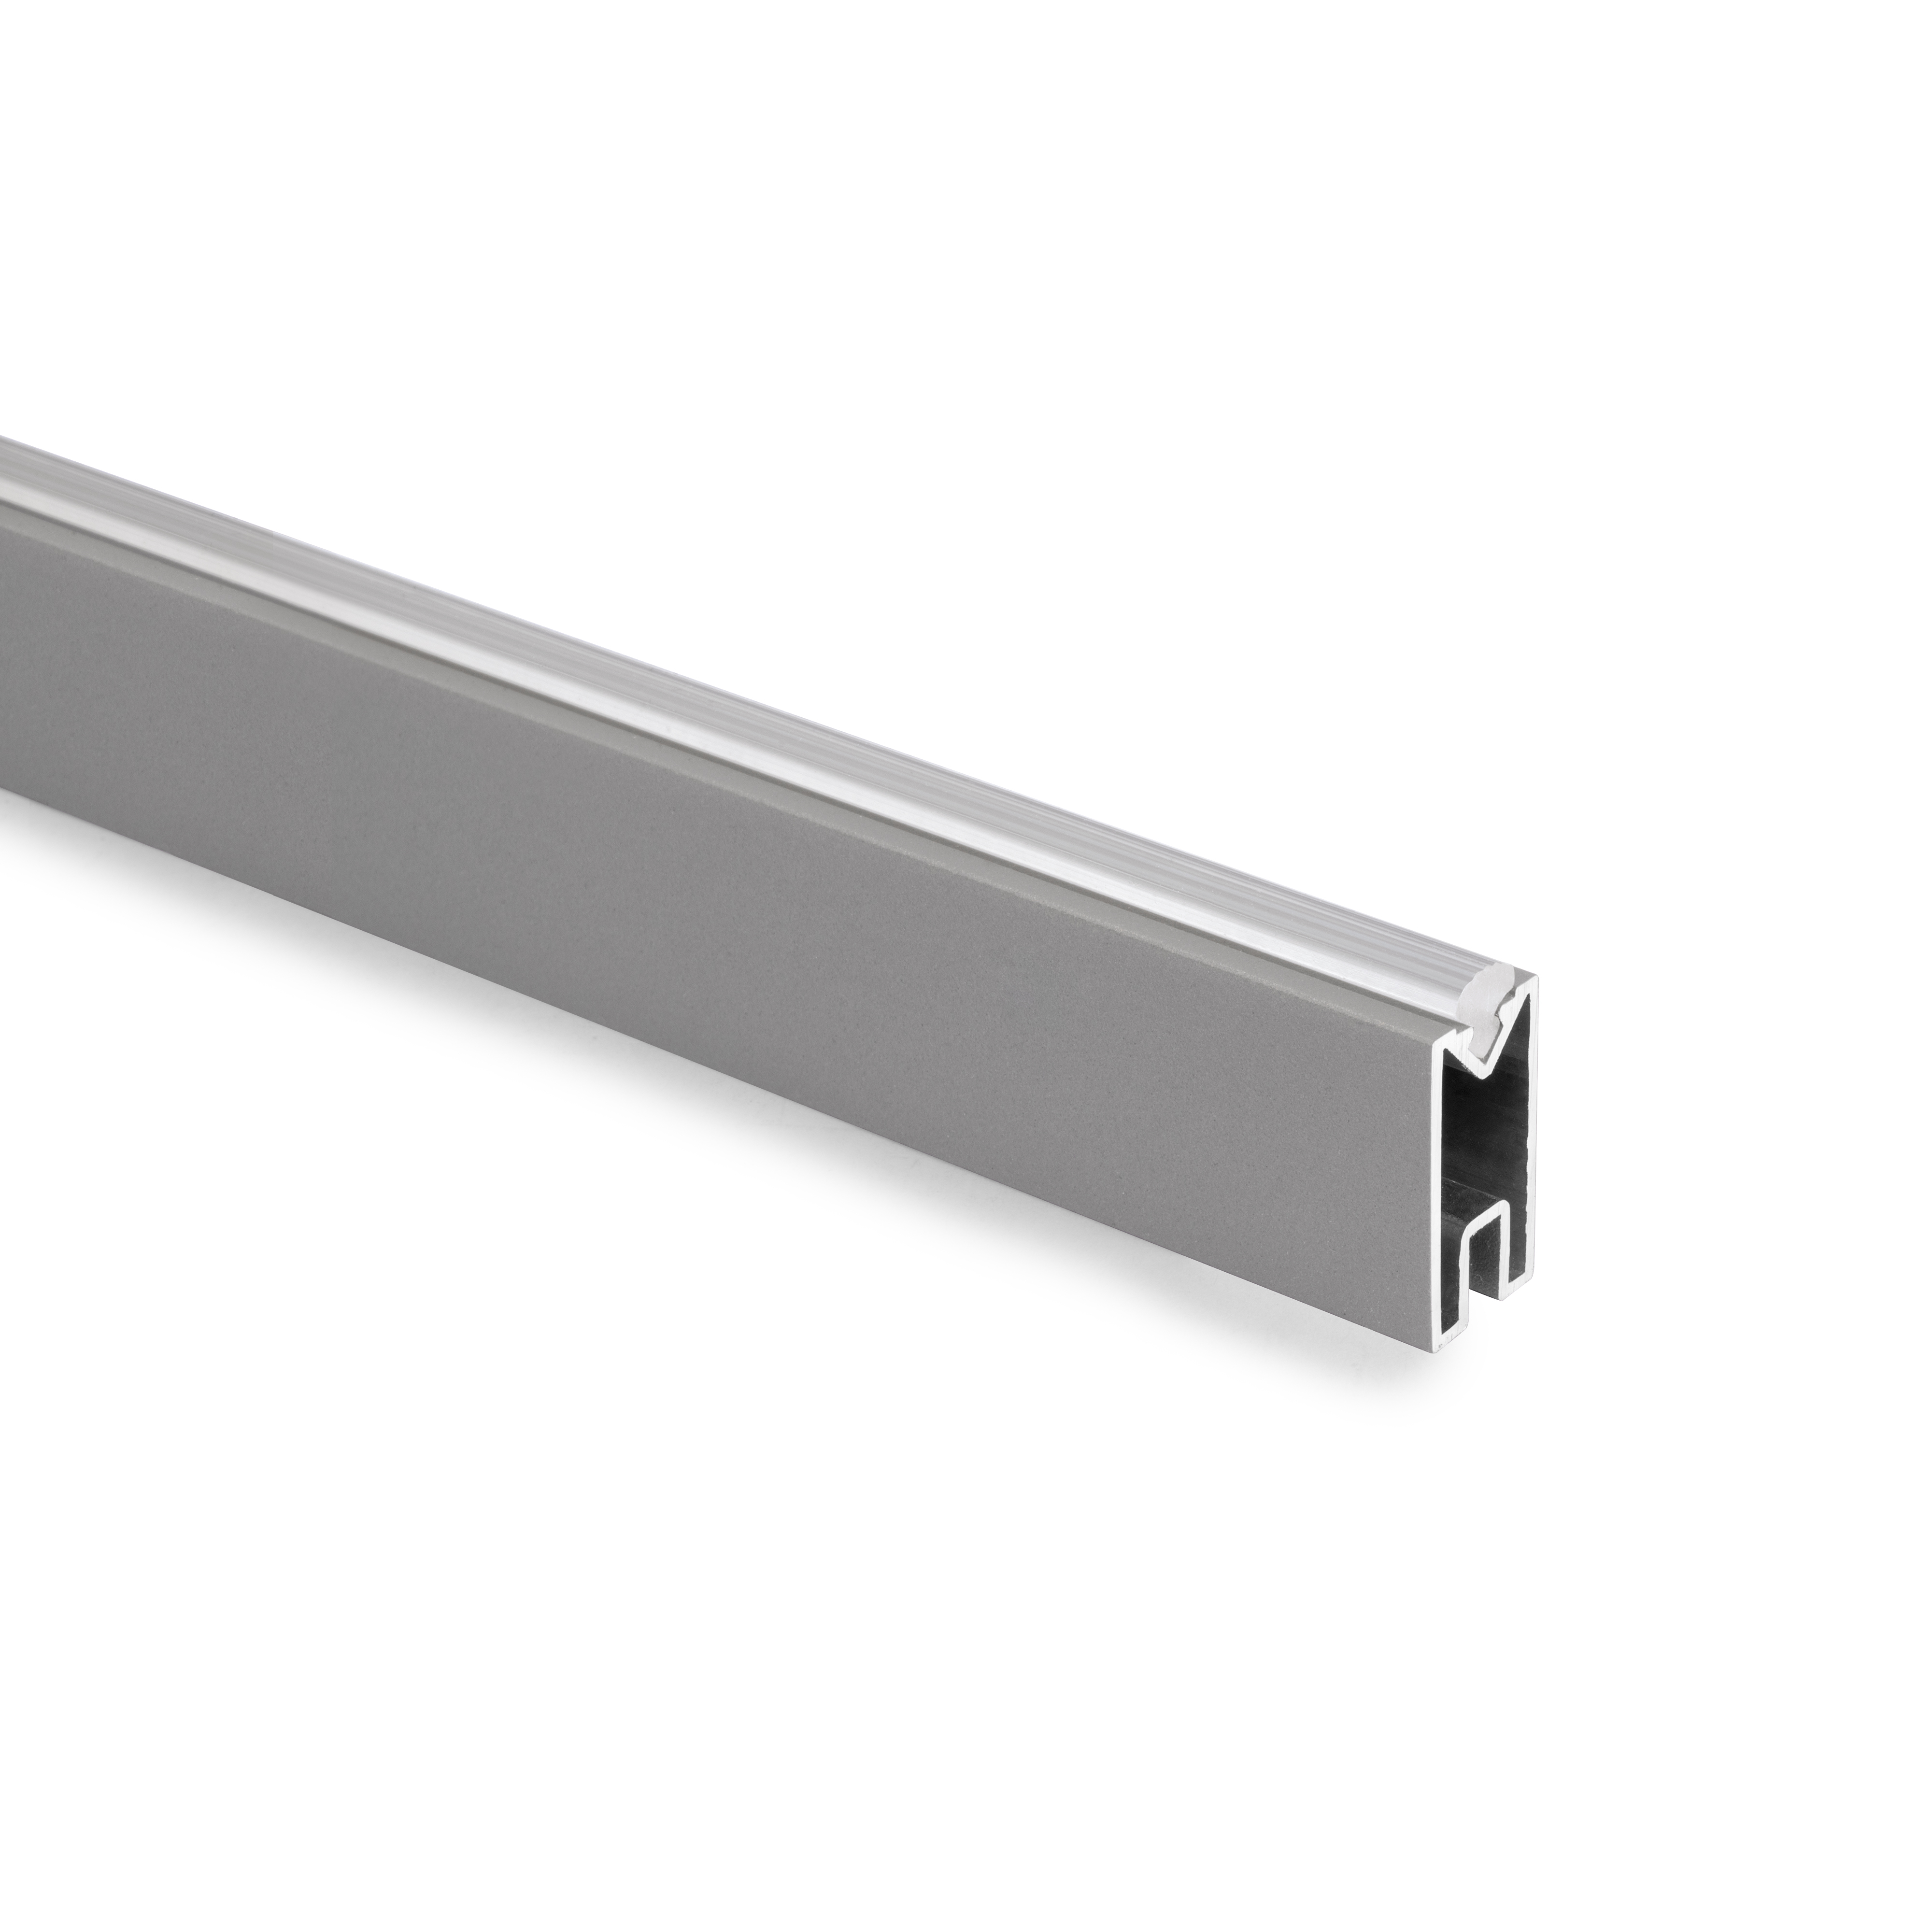 Barra para armario rectangular Luxe, longitud 2.35m, Aluminio, Pintado moka